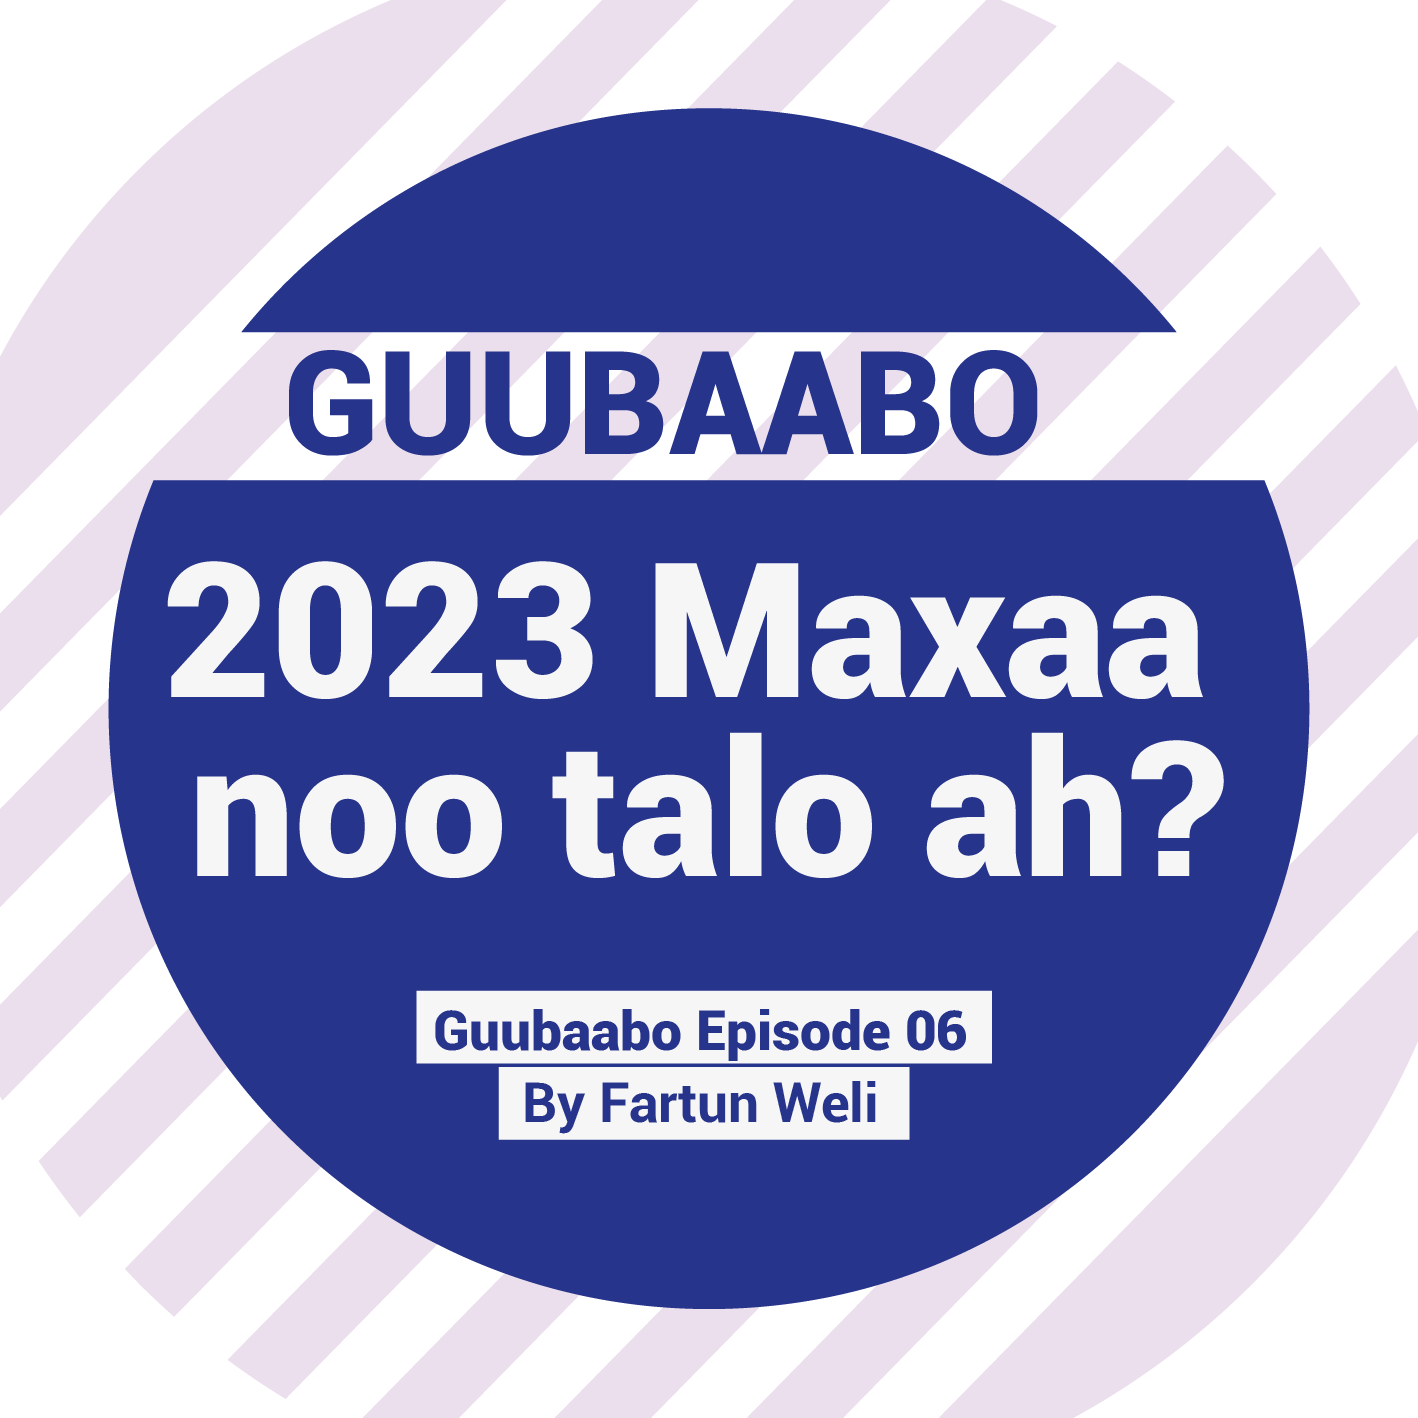 2023 Maxaa noo talo ah?